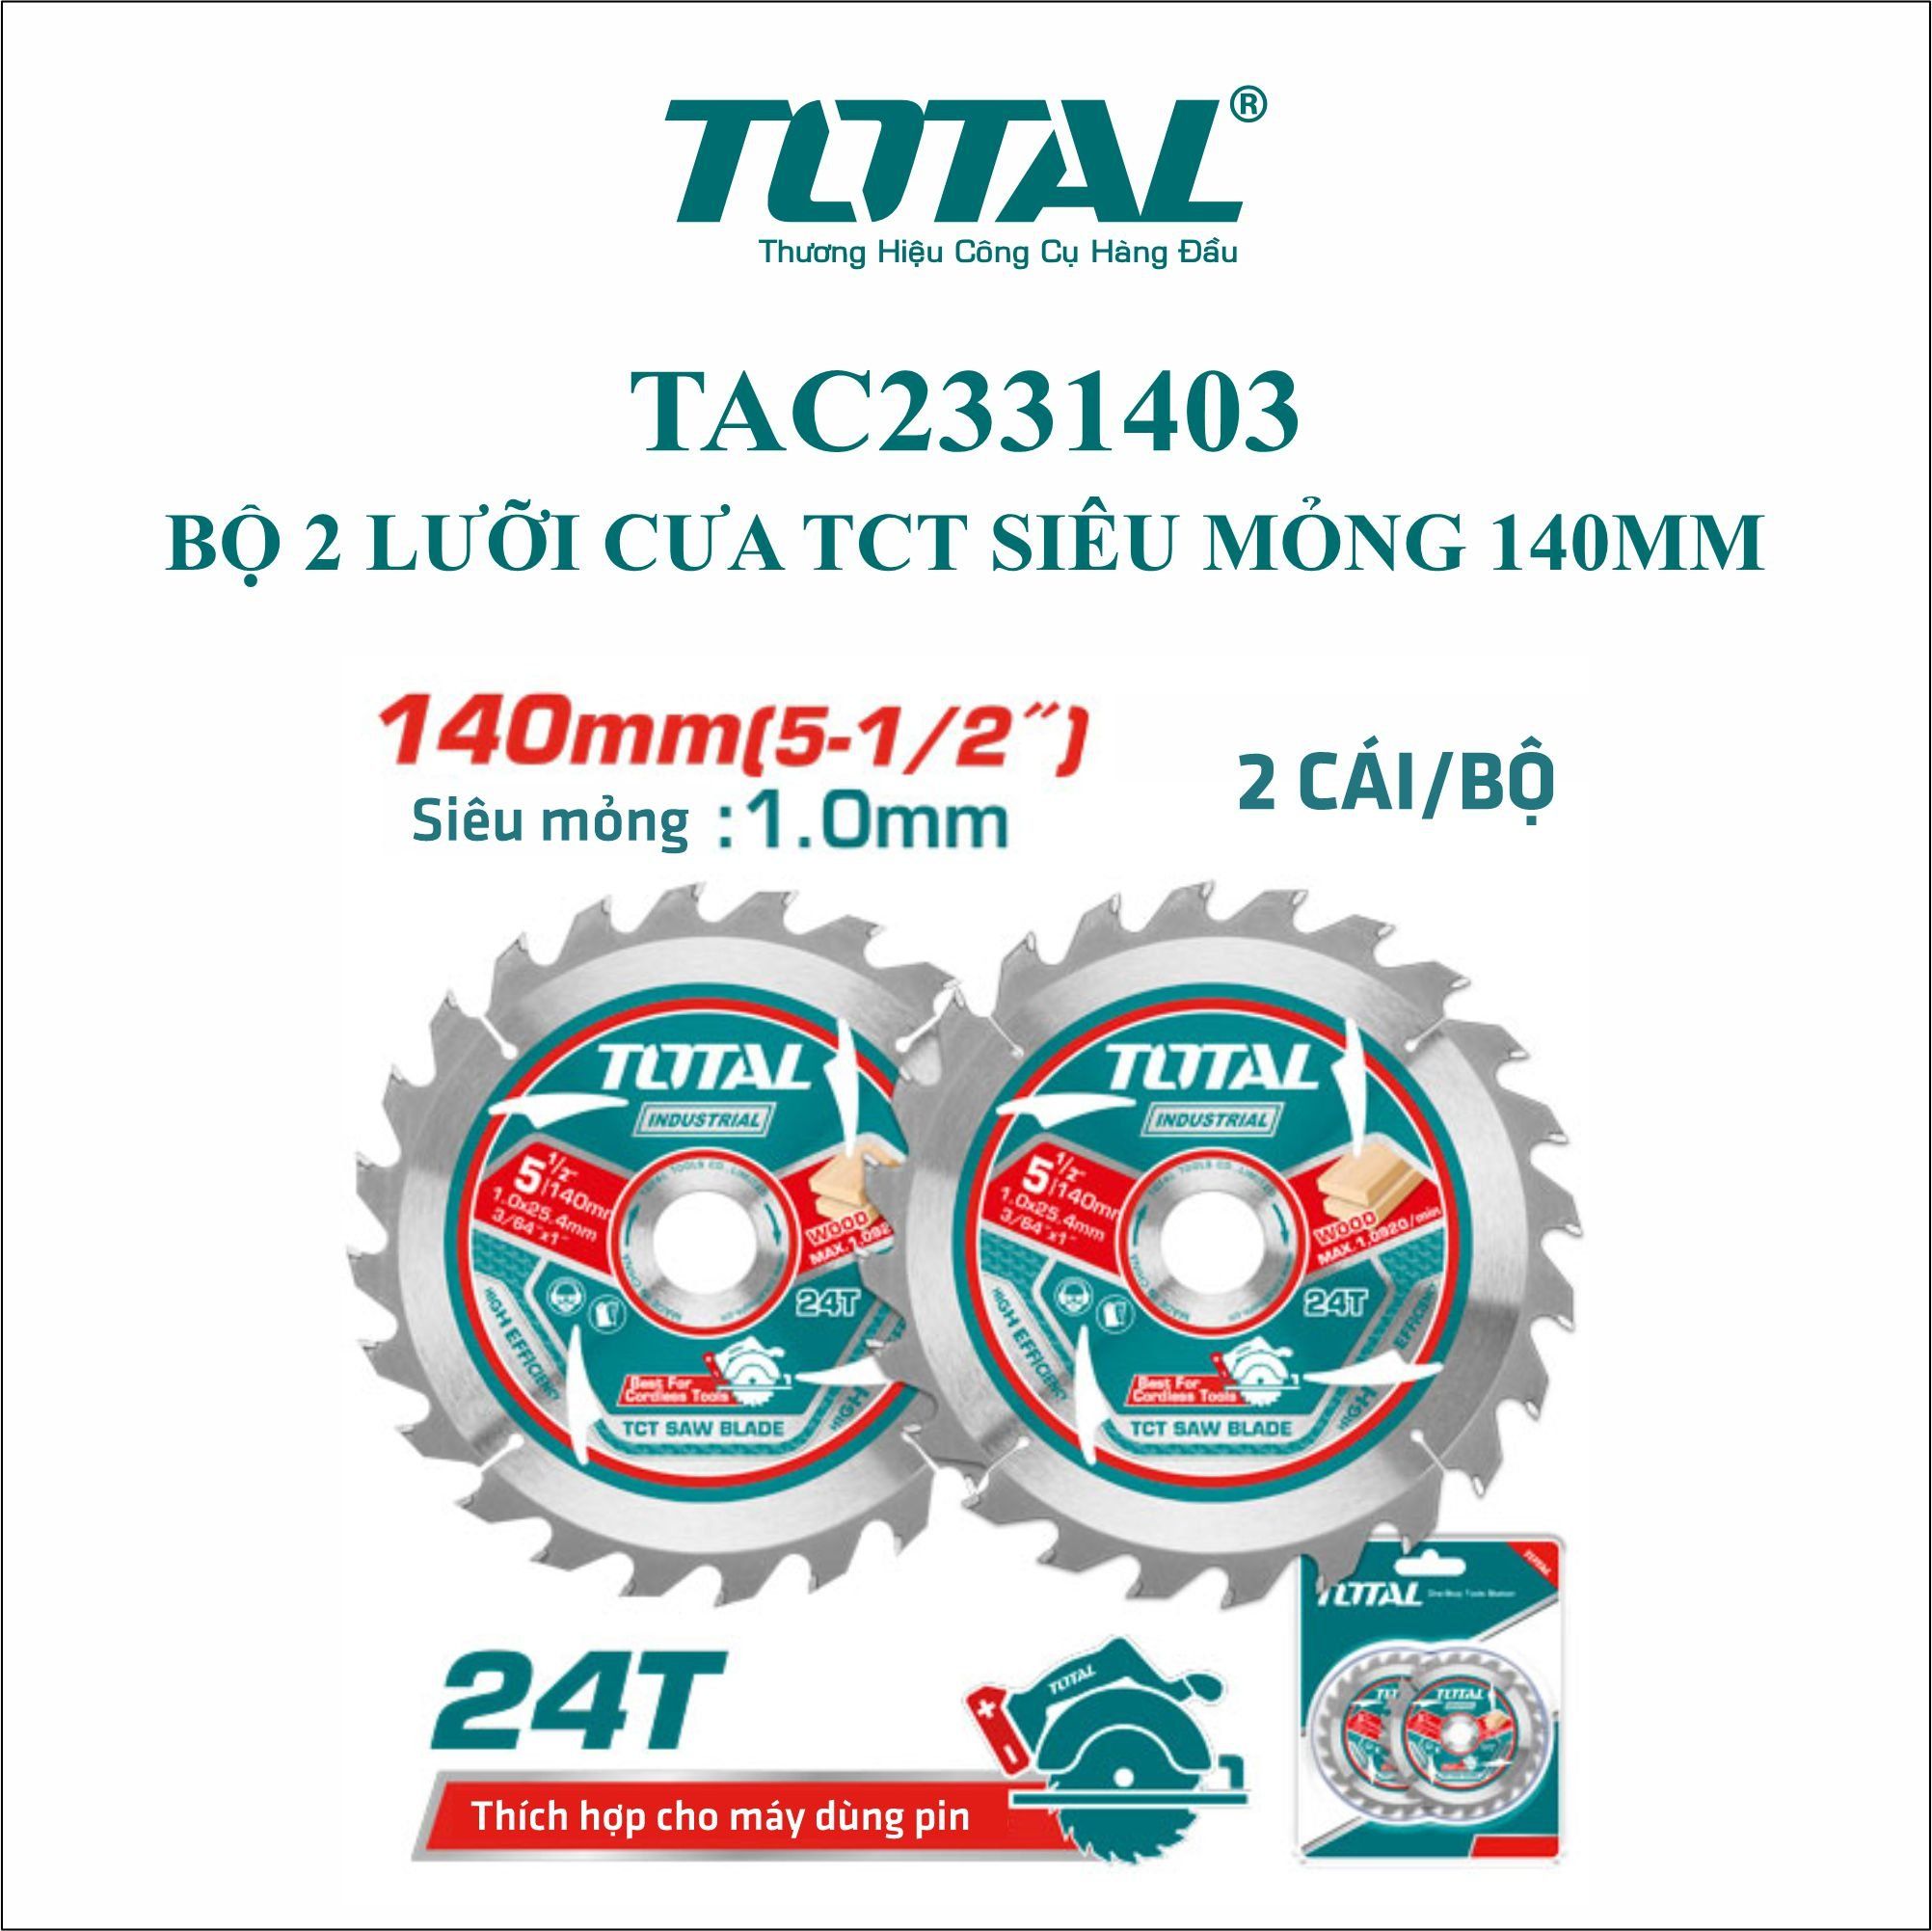  Bộ 2 lưỡi cưa TCT siêu mỏng 140mm Total TAC2331403 